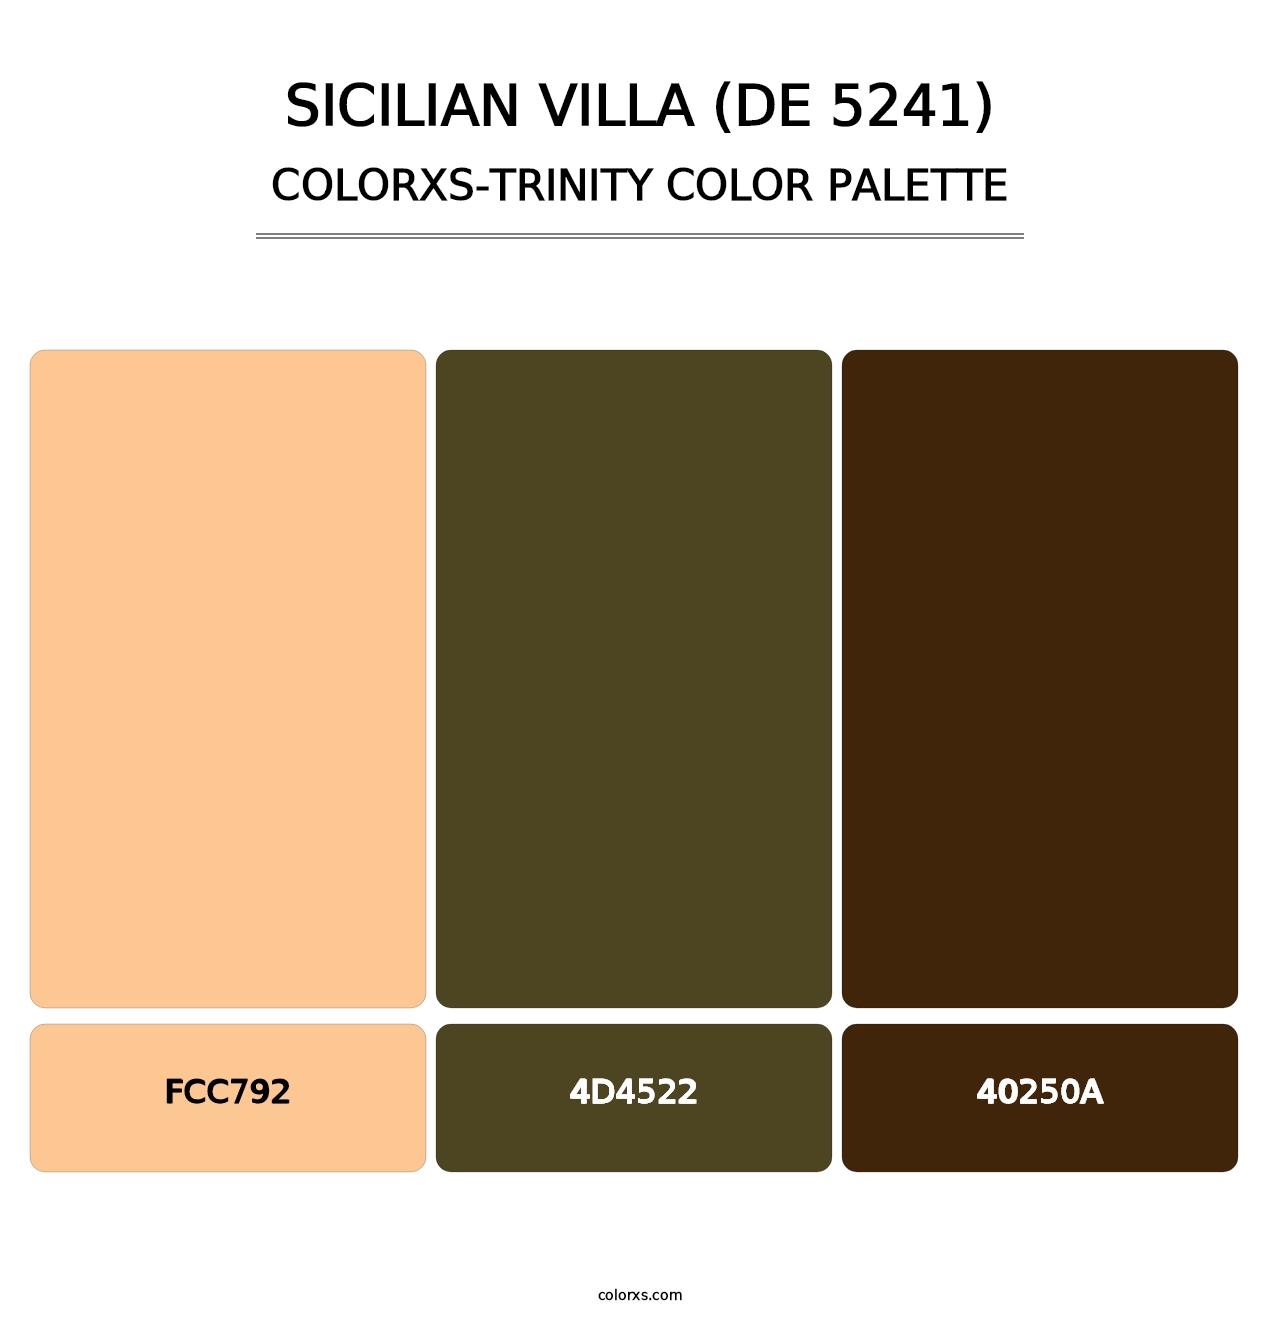 Sicilian Villa (DE 5241) - Colorxs Trinity Palette